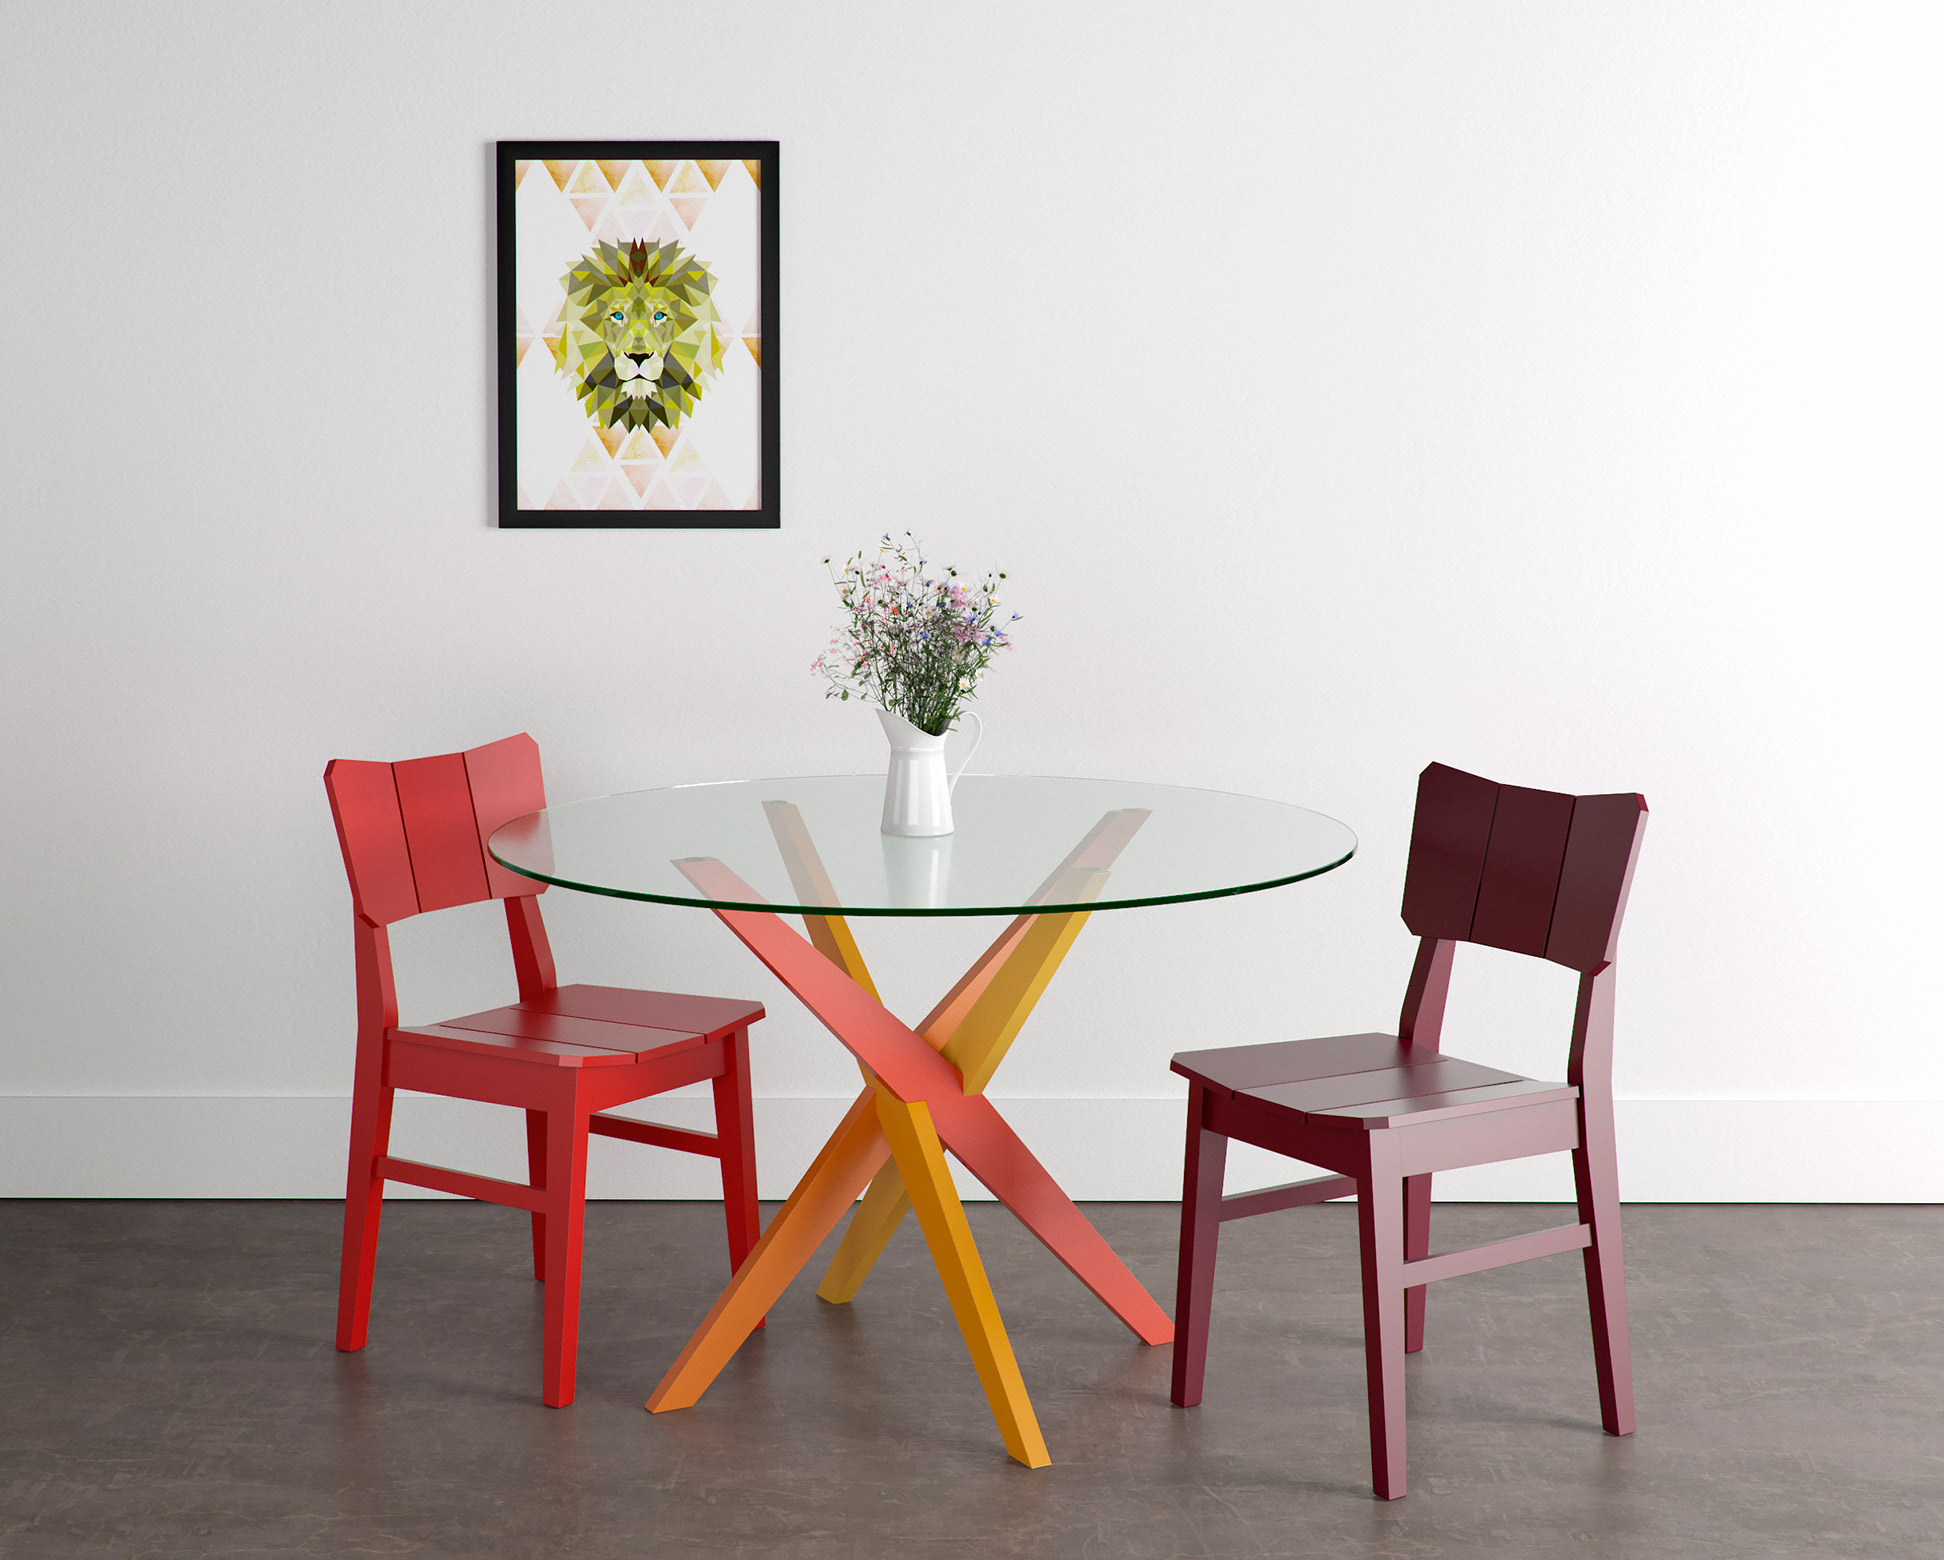 Sala de Jantar para duas pessoas com base de mesa colorida e cadeiras Uma coloridas também.